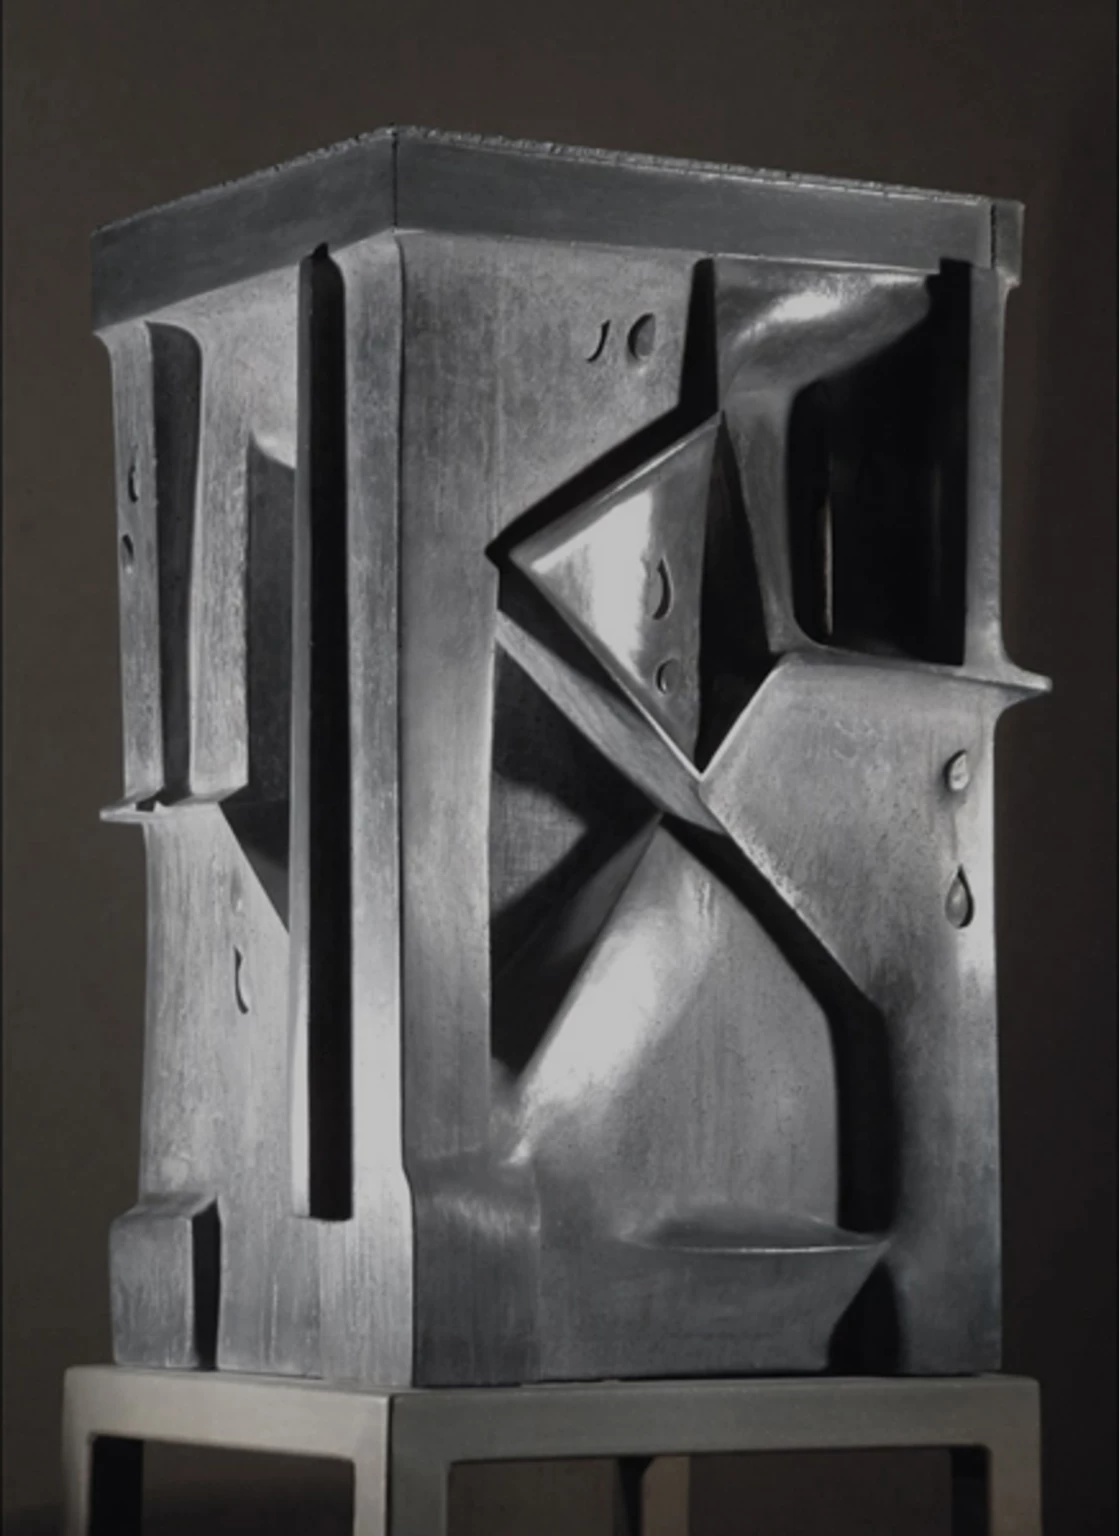 SHOAH I., 2004 - silver, concrete, 73 x 44 x 44 cm